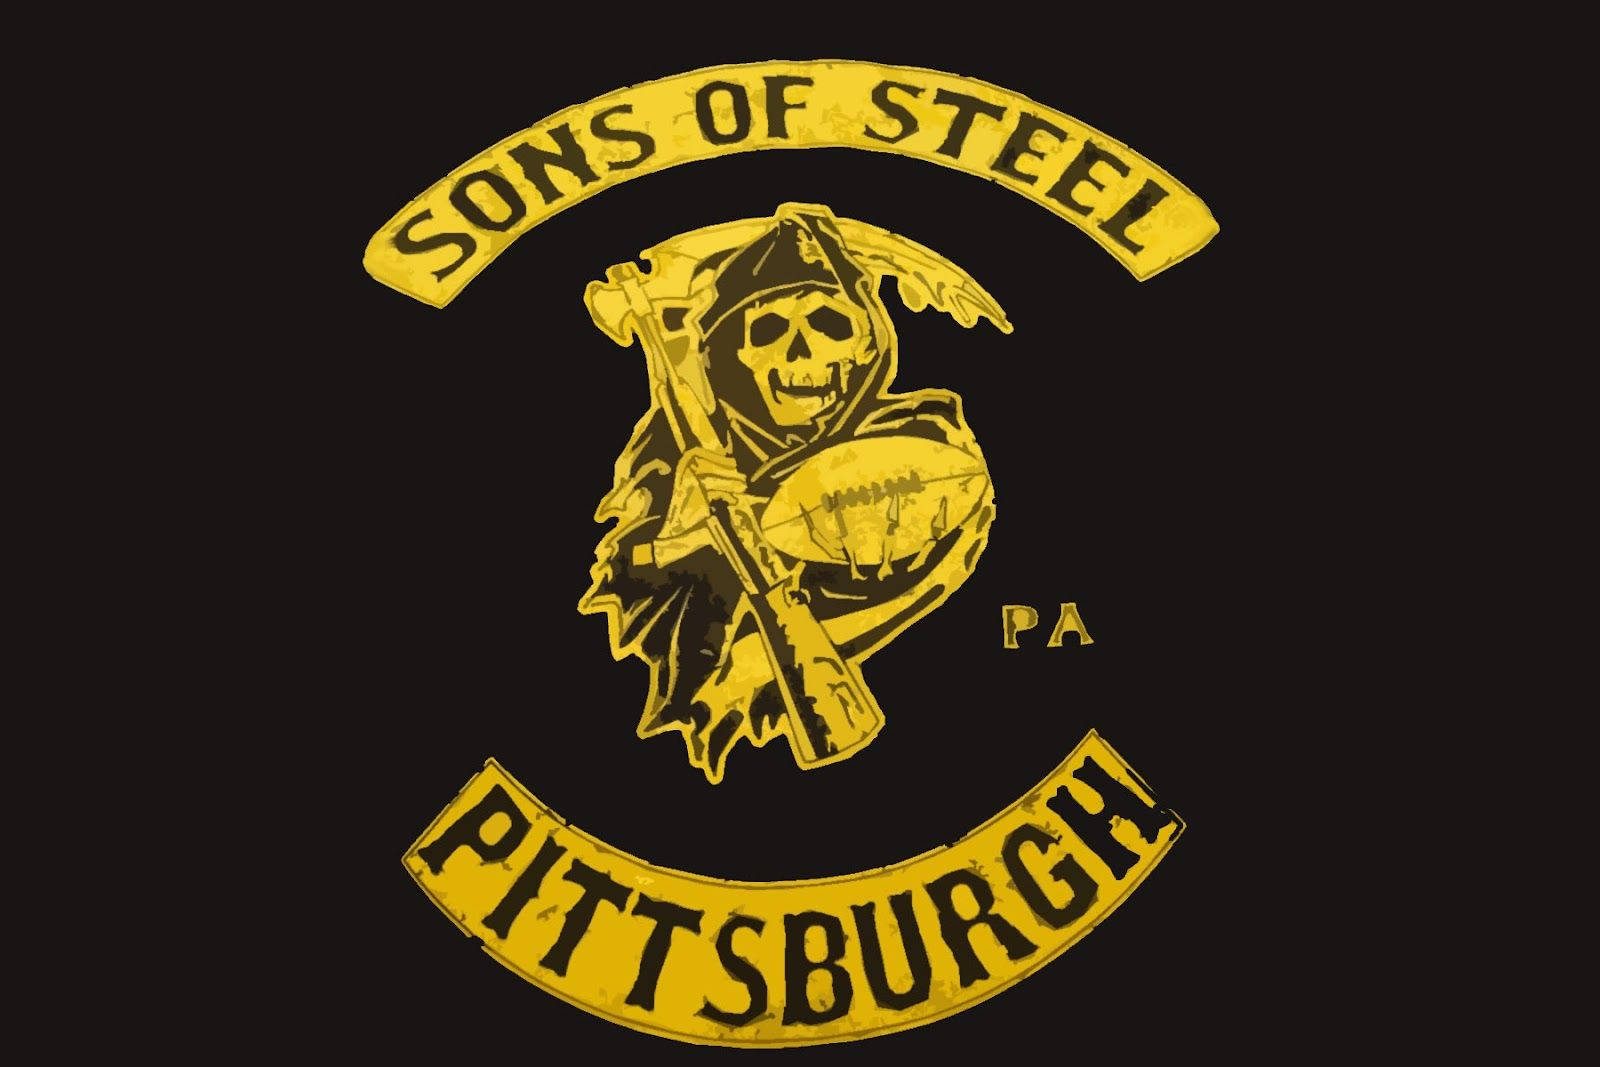 Sons Of Steel Steelers